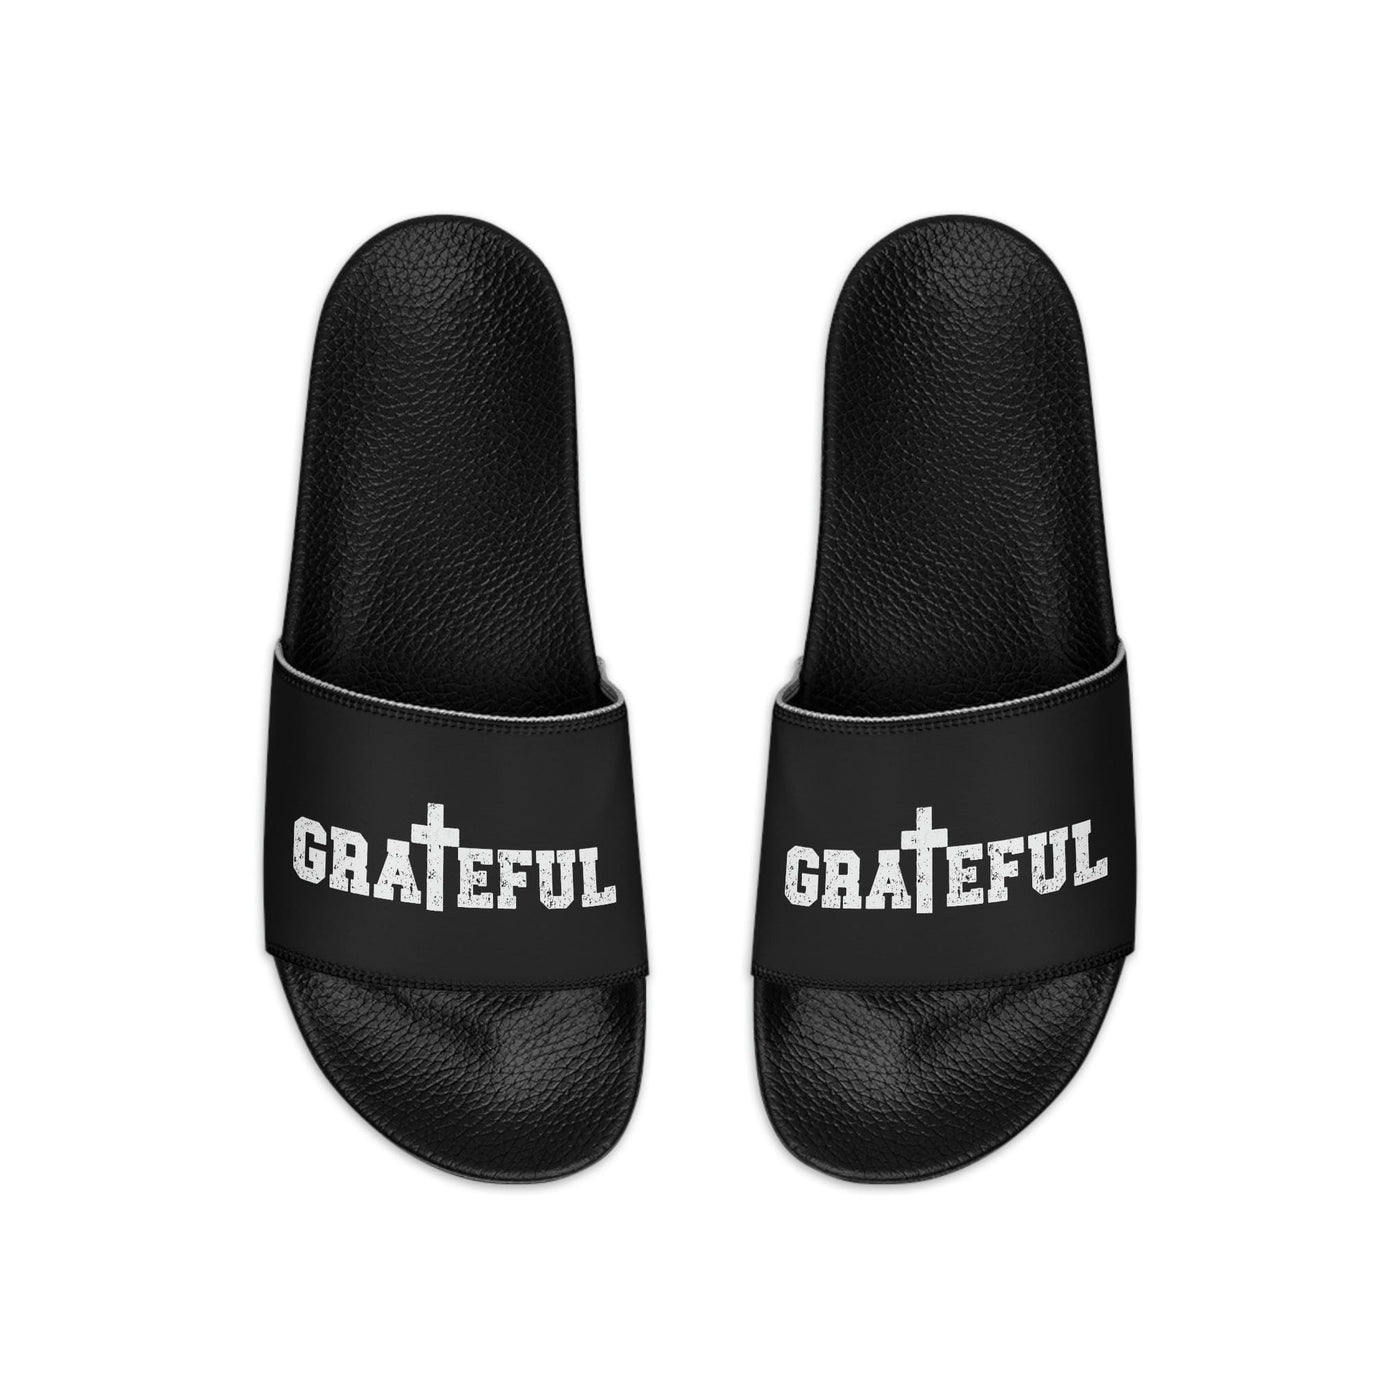 Mens Black Slide Sandals Grateful Christian Inspiration Affirmation - Mens